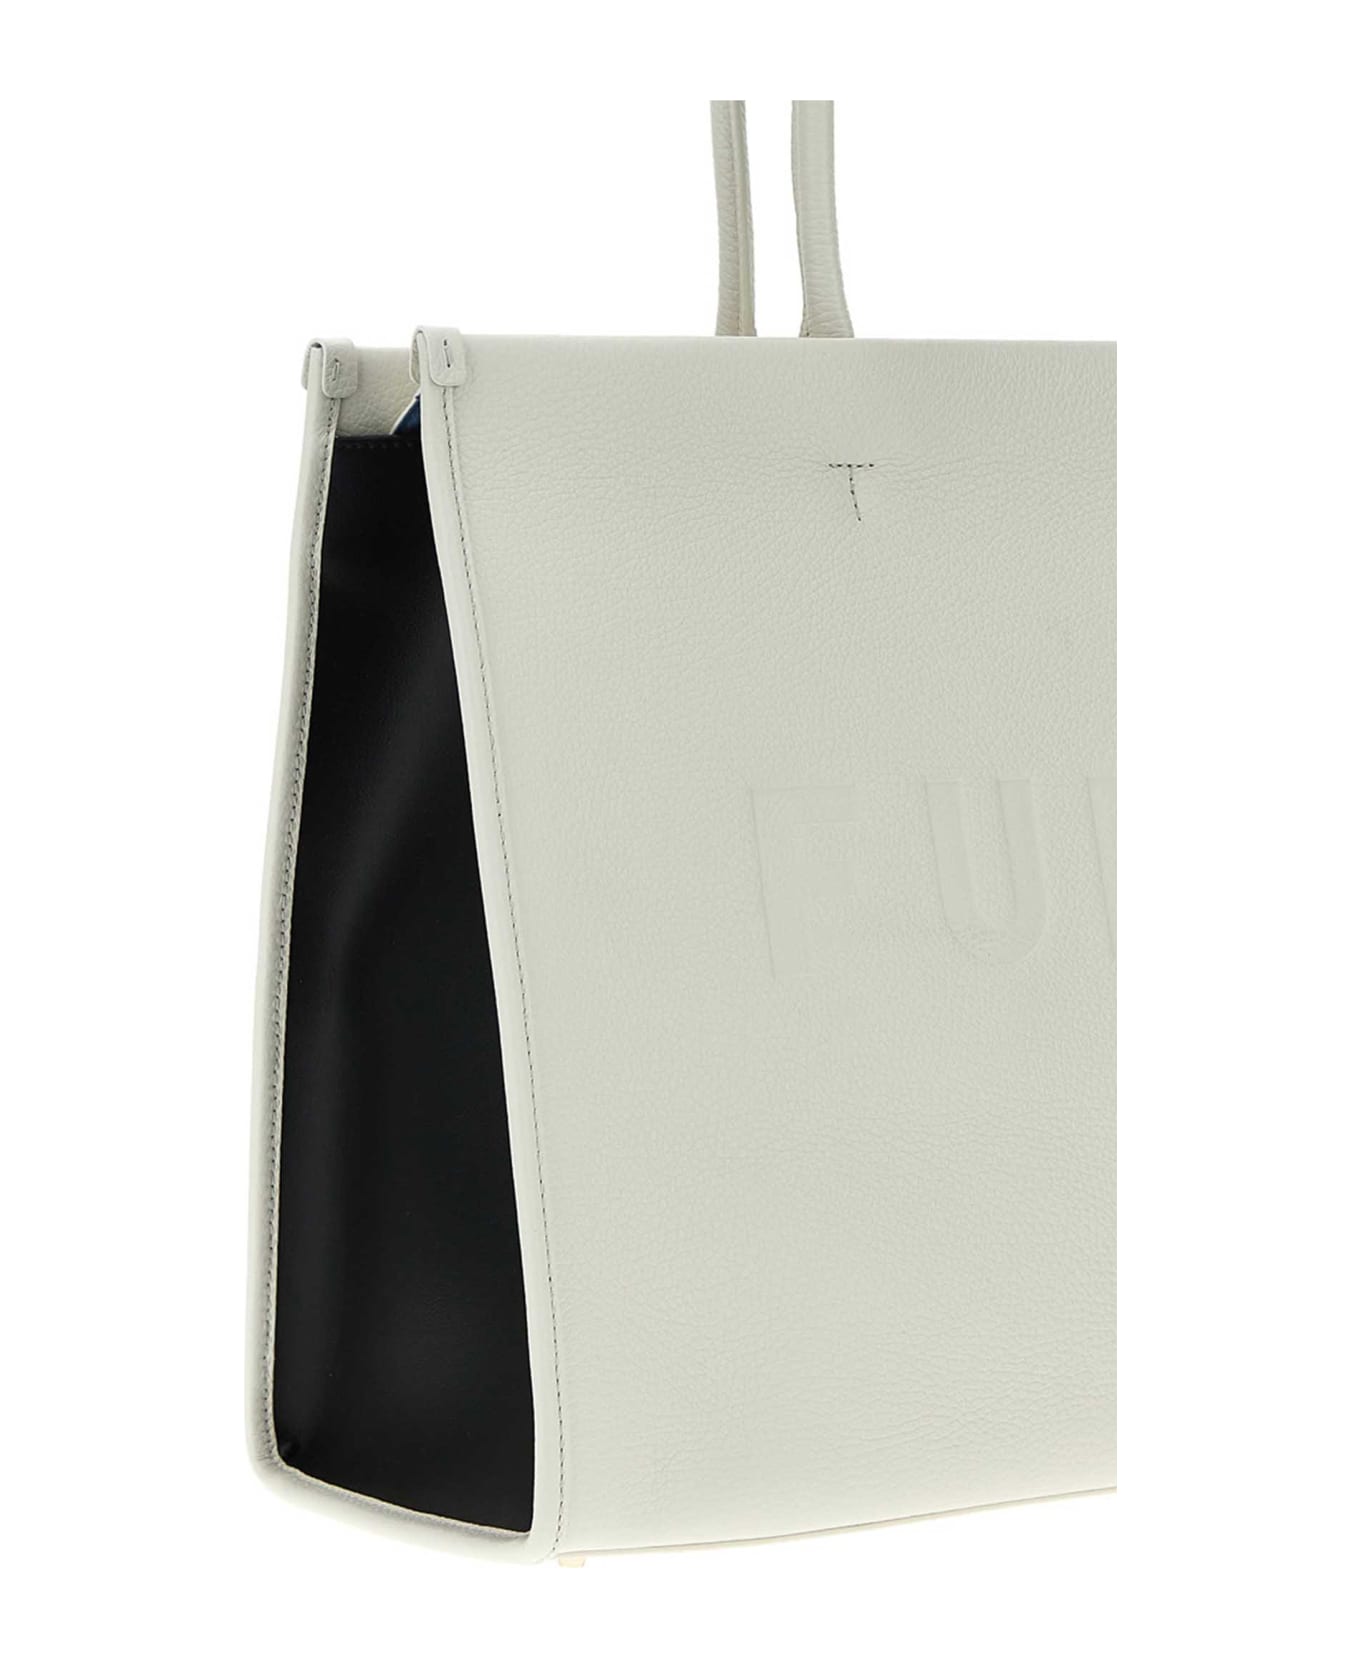 Furla 'opportunity L' Shopping Bag - White/Black トートバッグ